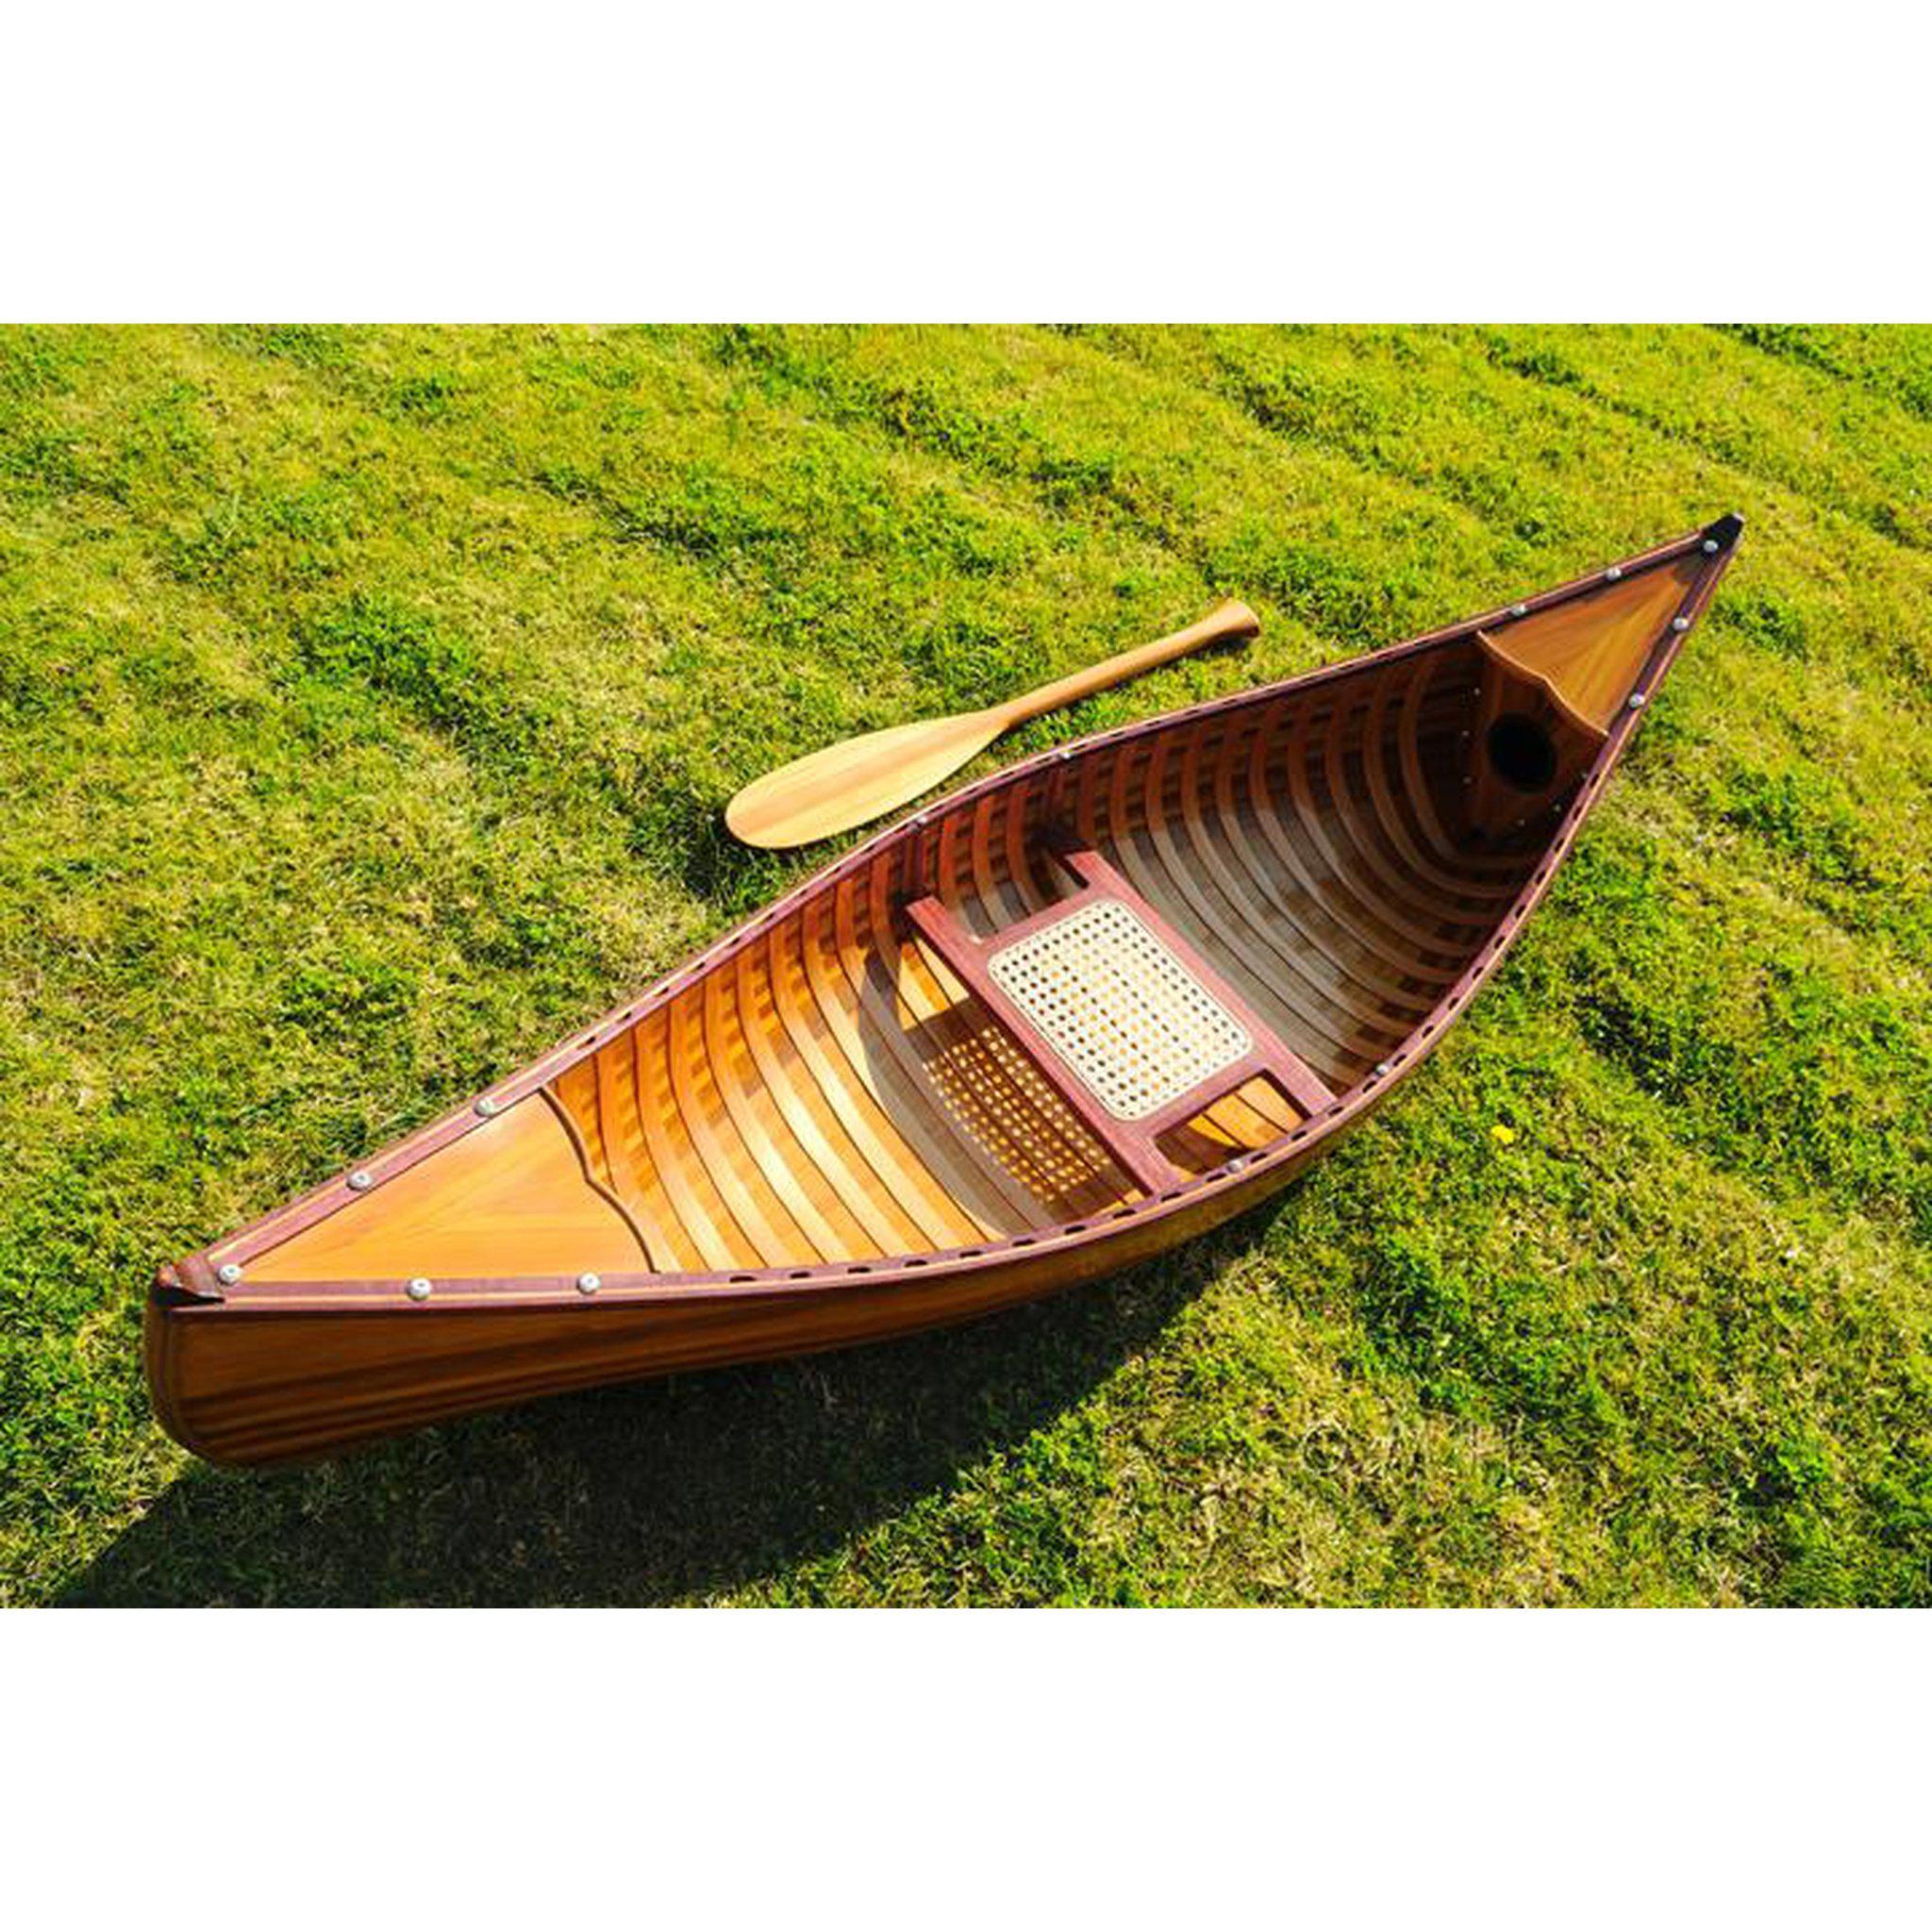 650 Fly fish ideas  canoe, wooden canoe, wooden boats